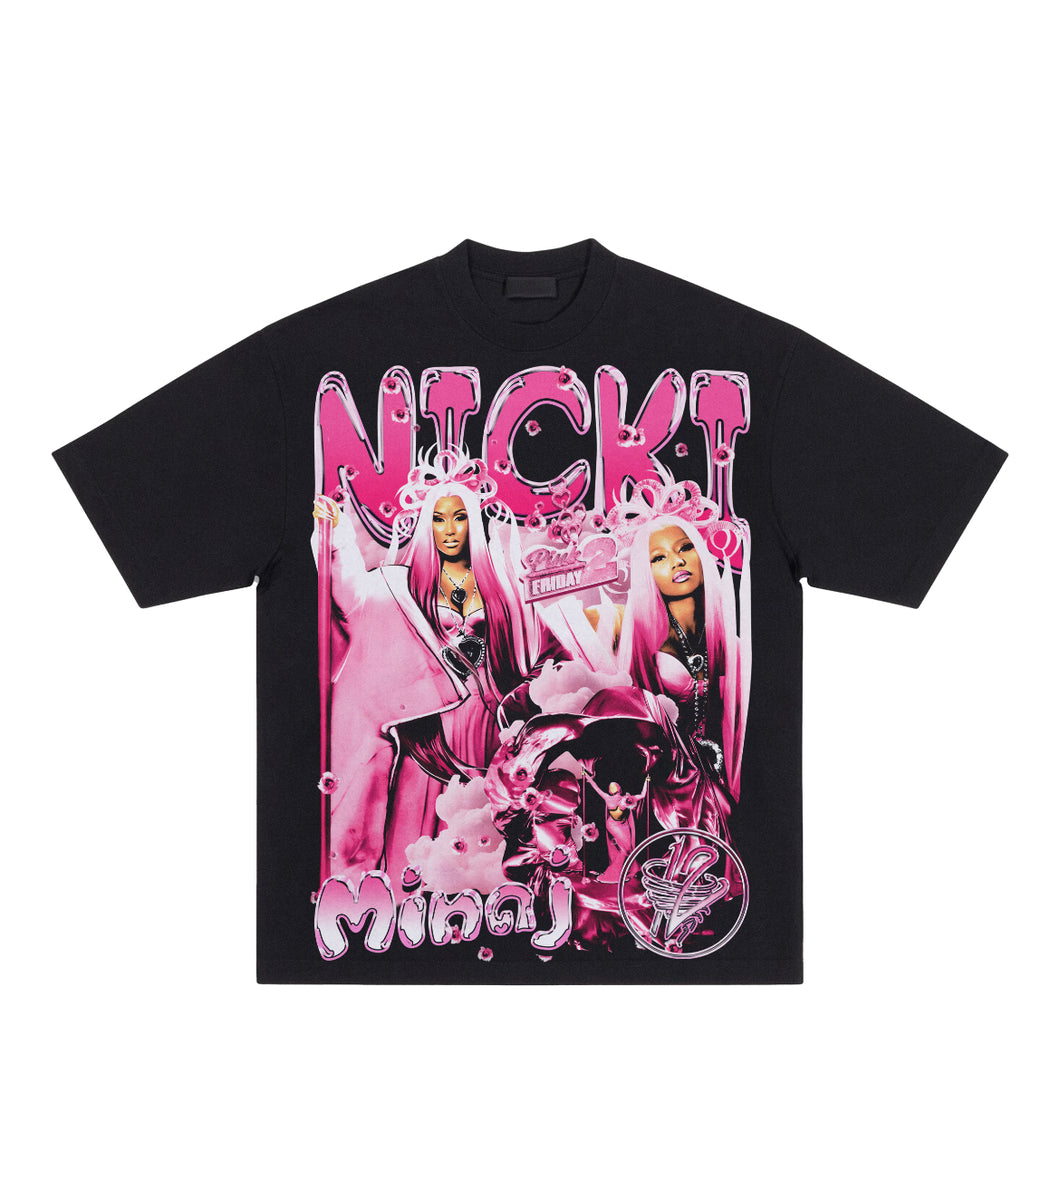 Nicki Minaj Pink Friday 2 Tour Tee